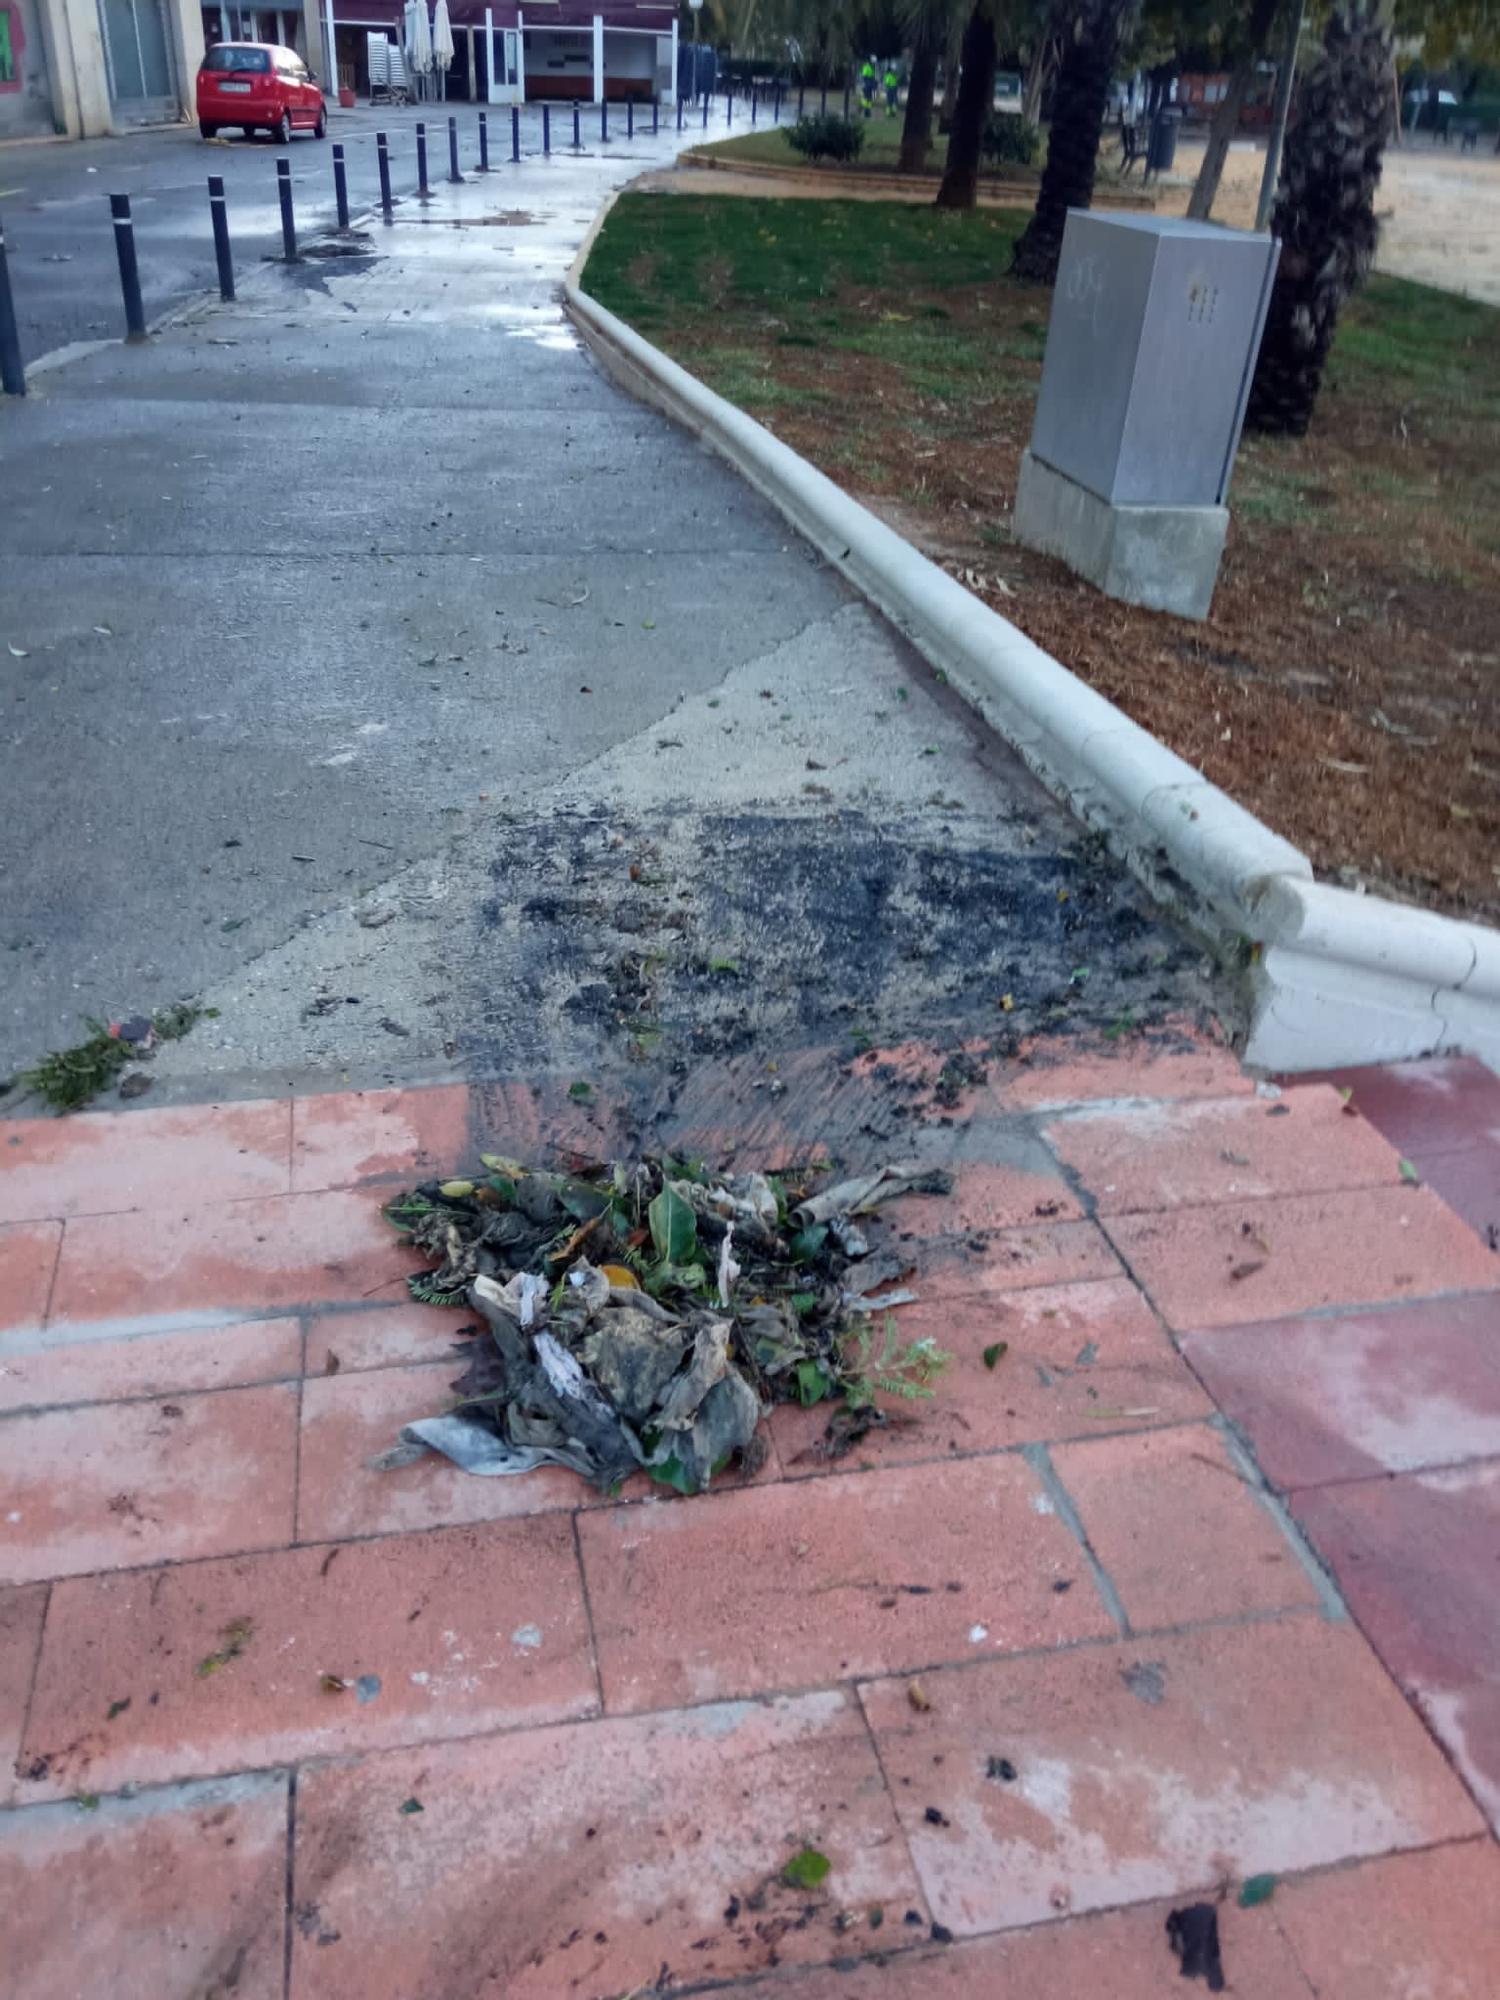 Ratas muertas, basura y restos fecales tras la tormenta en Alicante